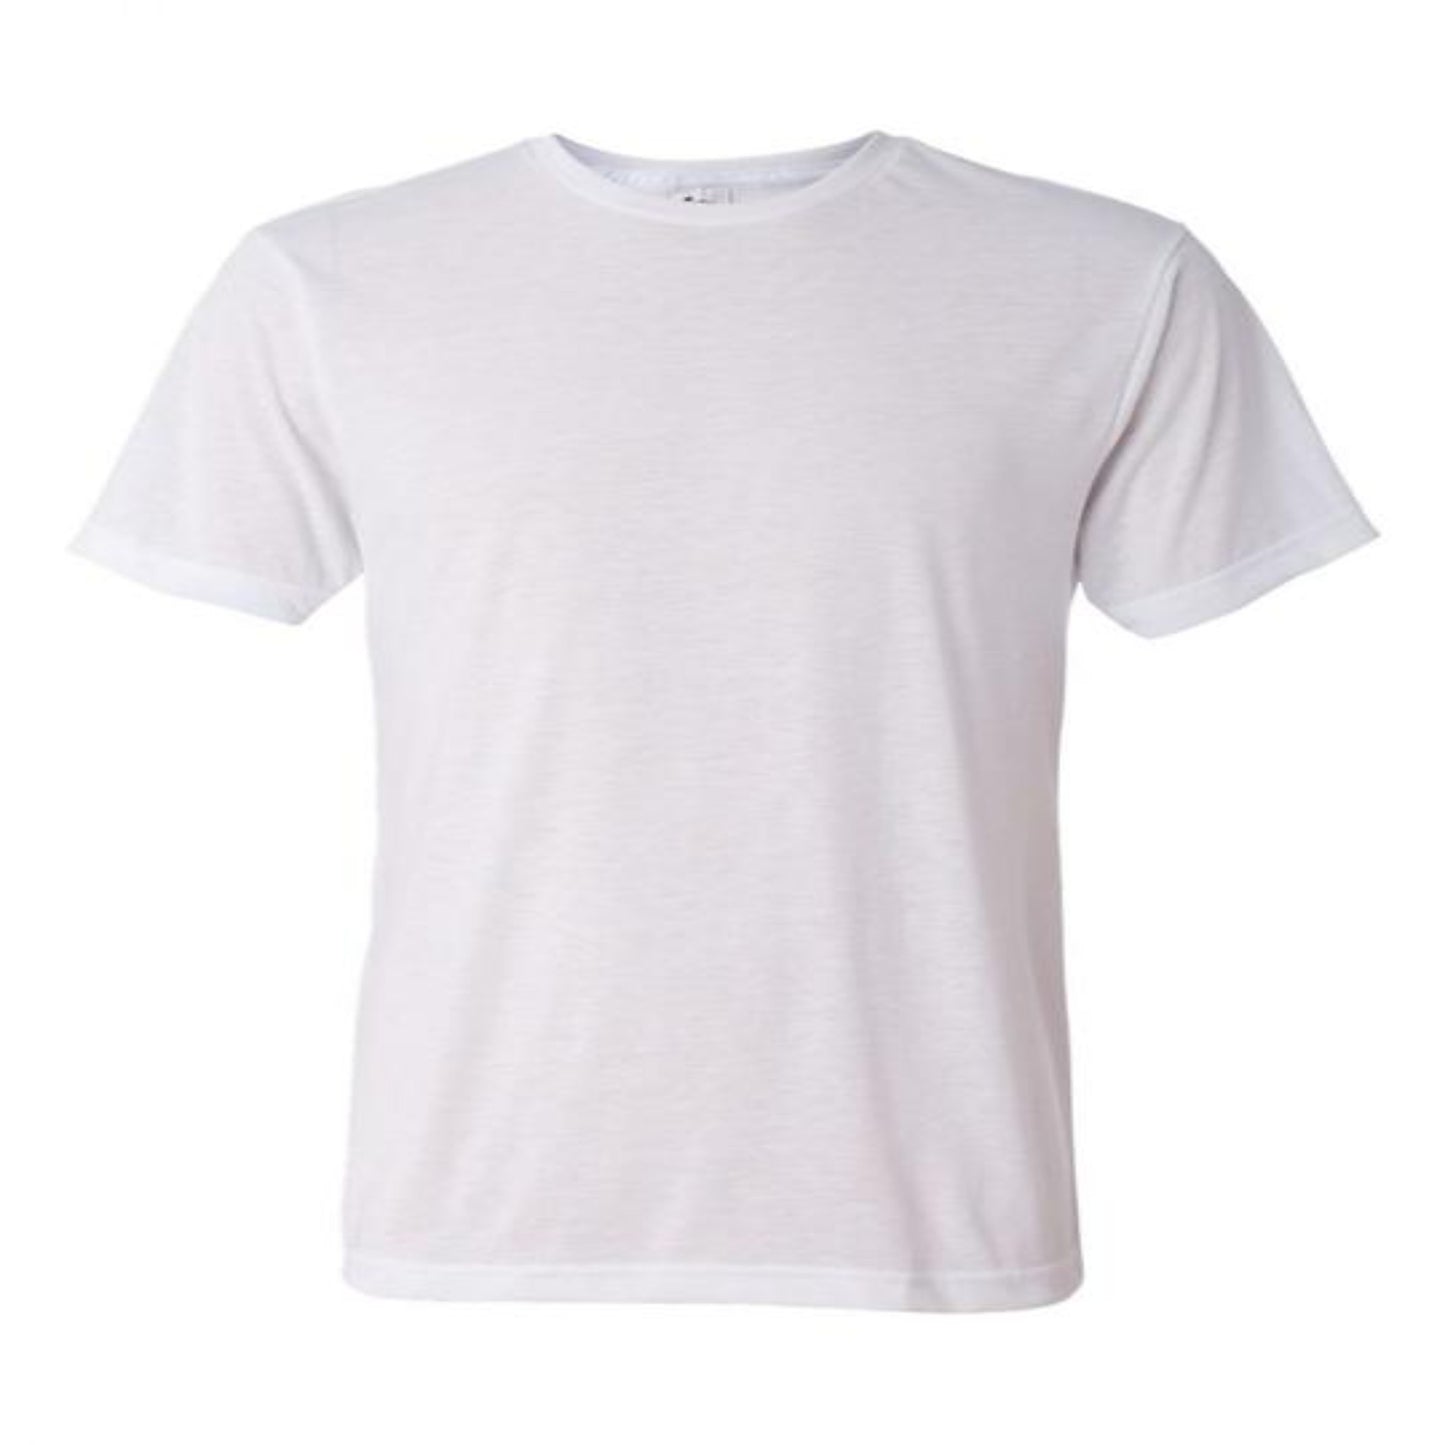 Sublimation T-Shirt Vendor’s List